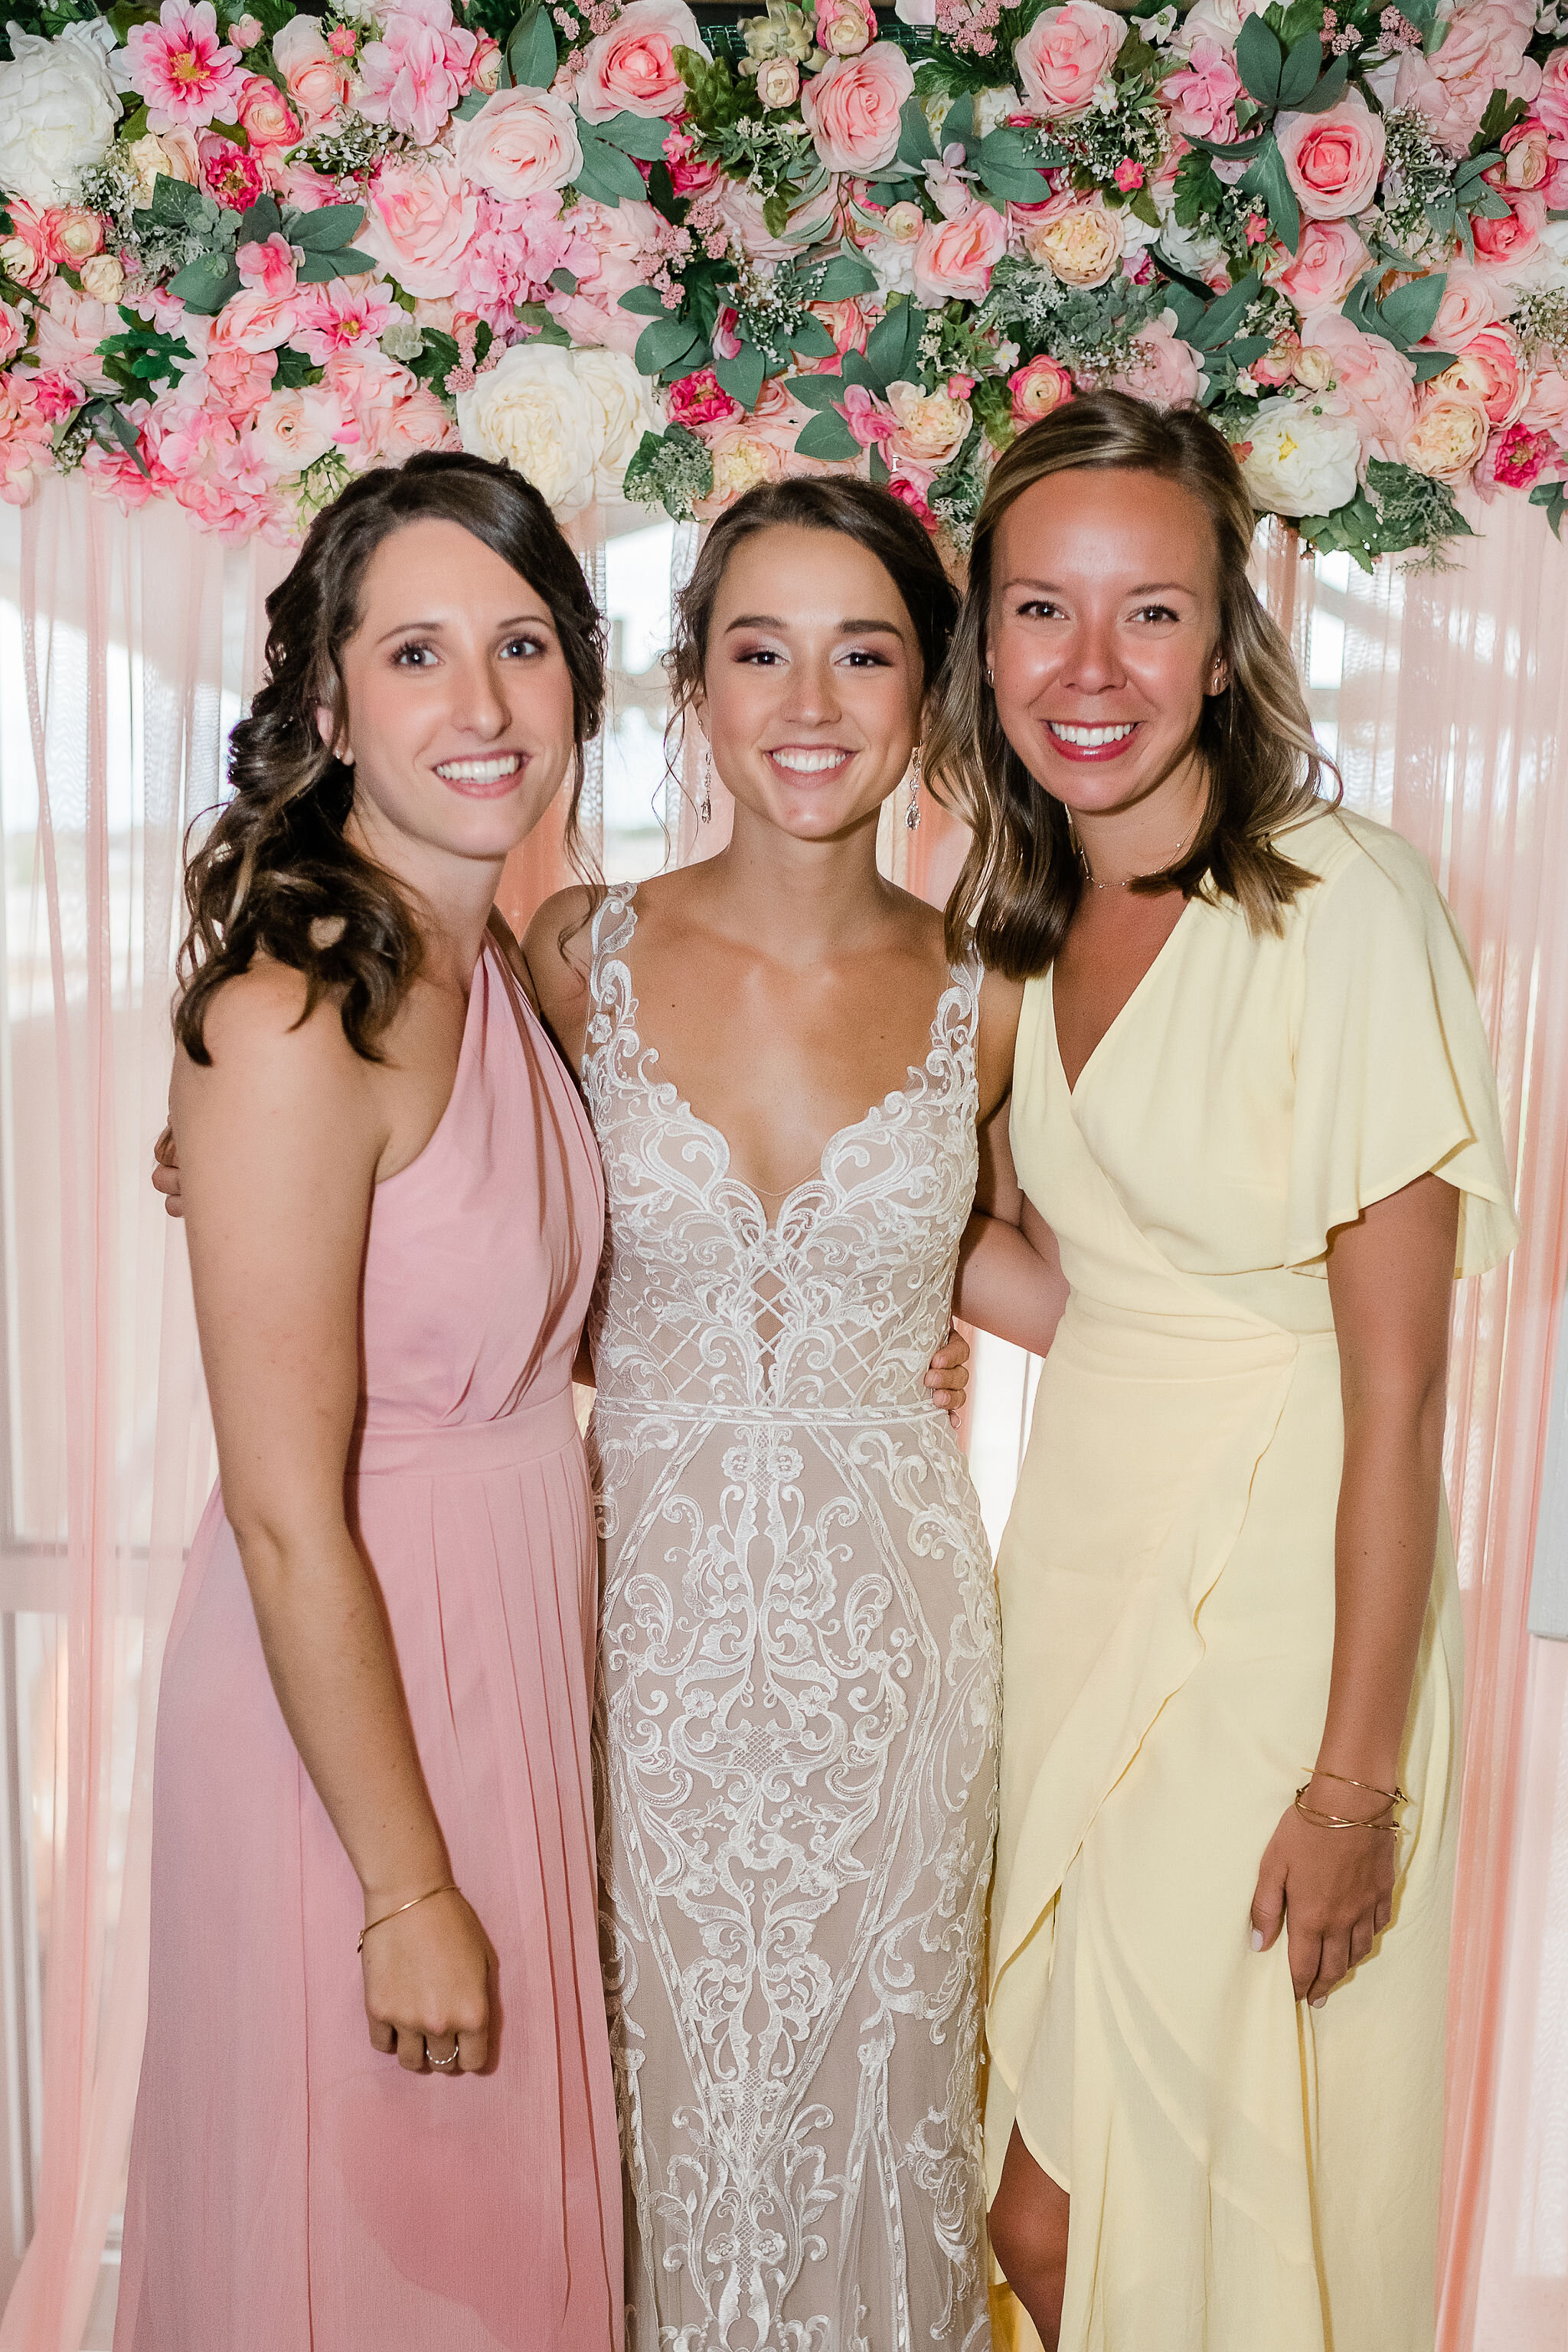 Bride with wedding guests